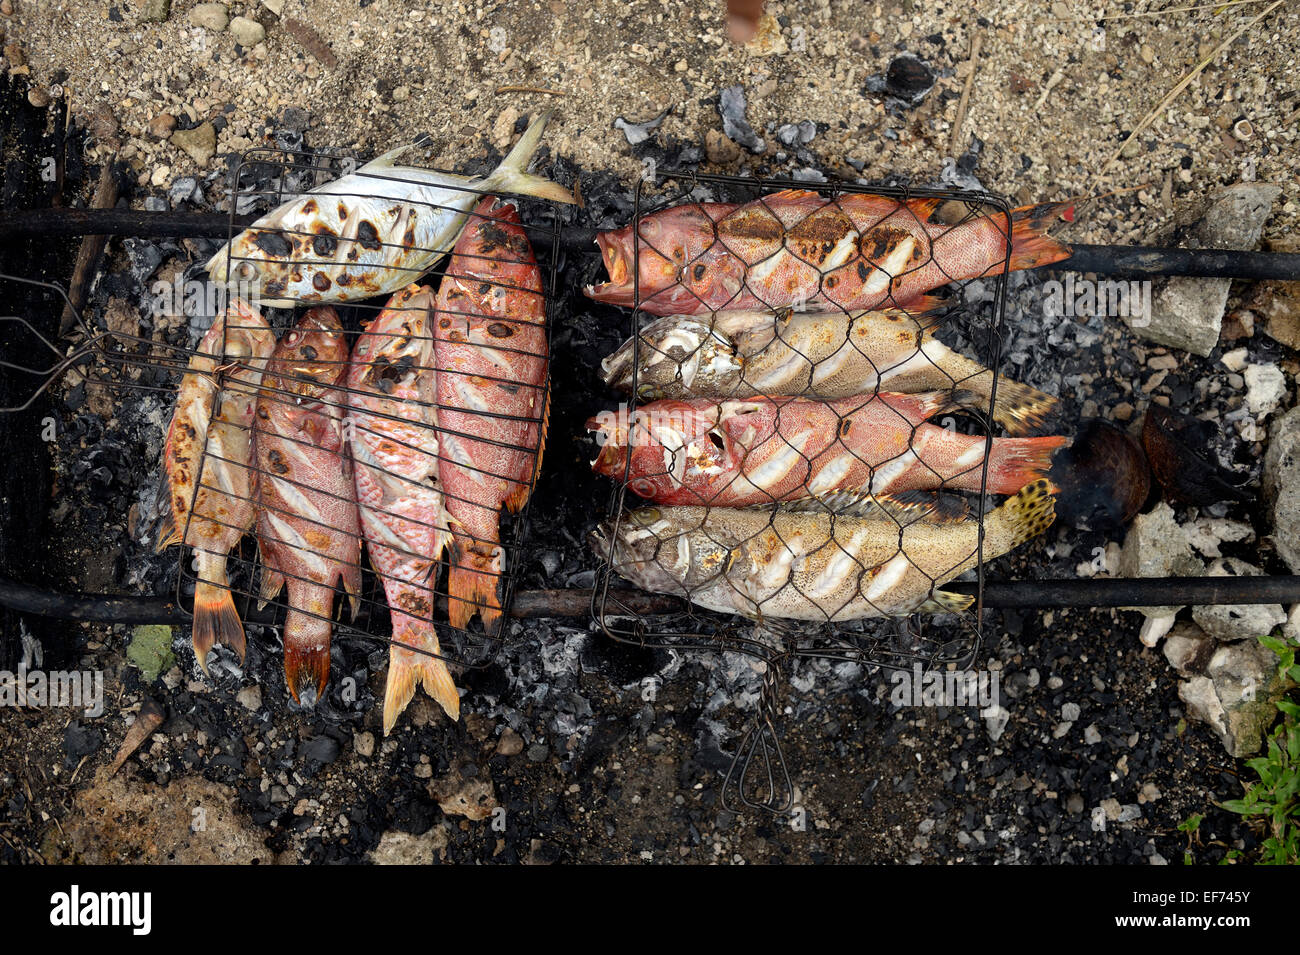 El pescado se cocinan sobre brasas, Simeulue, Indonesia Foto de stock